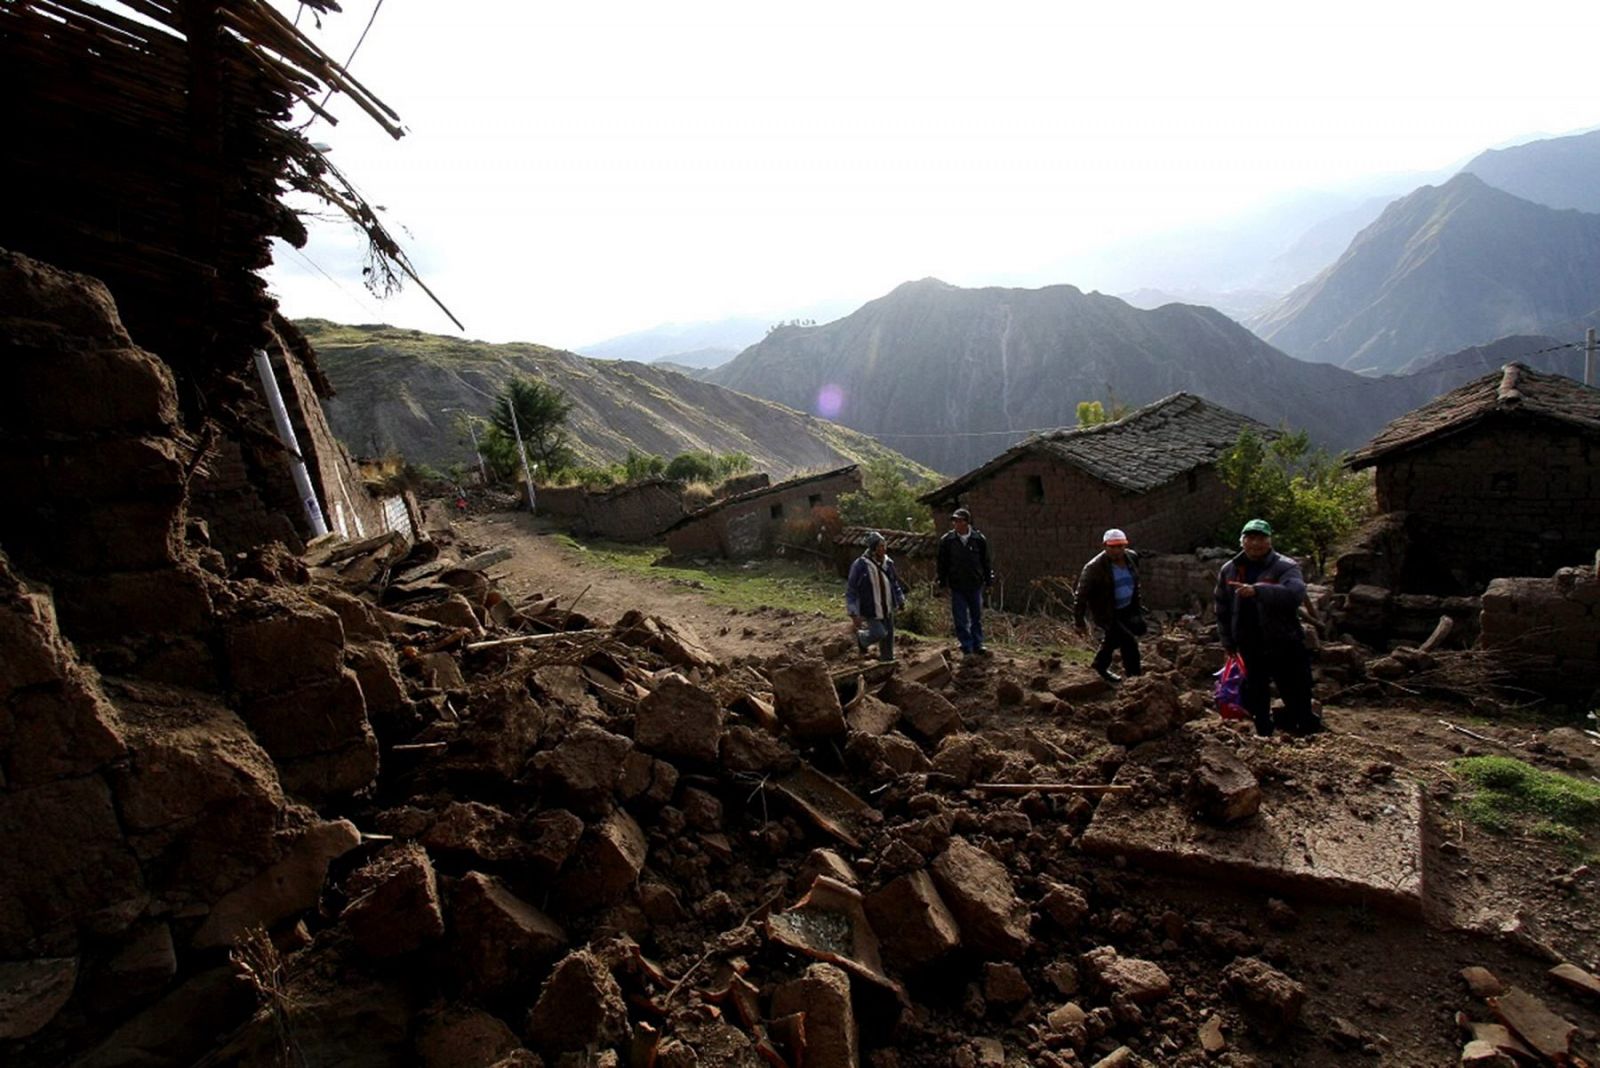 Fotografía cedida por la Agencia Andina que muestra algunas viviendas afectadas por el terremoto.